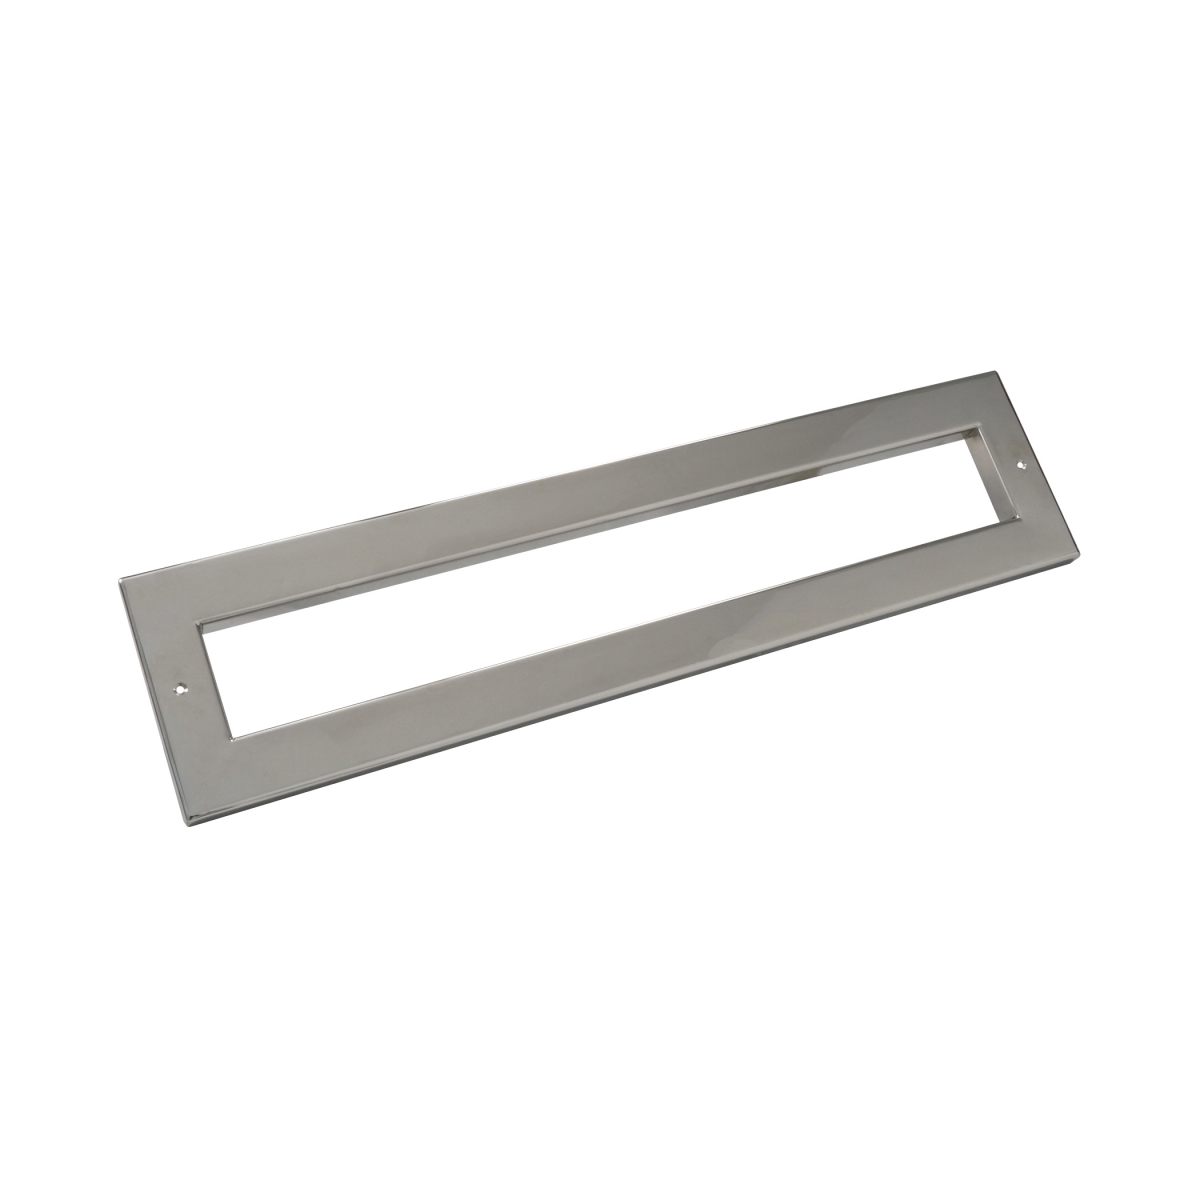 Stainless steel cover for Smart Skimmer High75 78491+78515 Stainless steel cover for Smart Skimmer High75 78491+78515